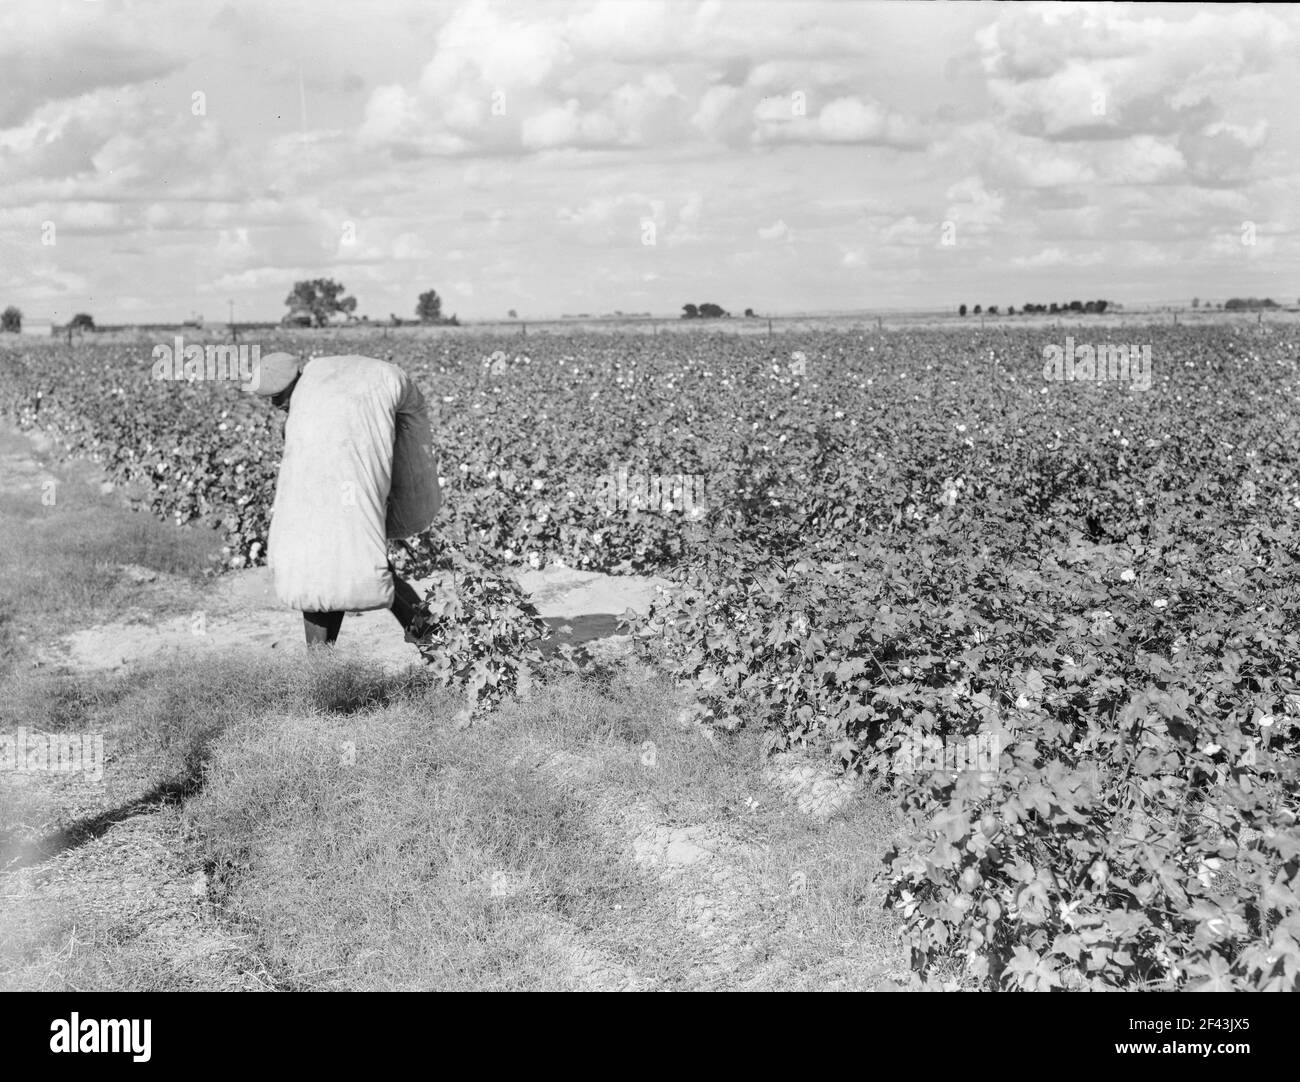 Wanderarbeiter beim Baumwollpflücken im San Joaquin Valley, Kalifornien. Diese Baumwollpflücker werden fünfundsiebzig Cent pro hundert Pfund bezahlt. Streikende, die sich unter dem Kongress der Gewerkschaft der Industrieorganisationen (CIO) organisieren, fordern einen Dollar. Ein guter männlicher Pflücker, in guter Baumwolle, unter günstigen Wetterbedingungen, kann ungefähr zweihundert Pfund in einer täglichen Arbeit pflücken. November 1938. Foto von Dorothea lange. Stockfoto